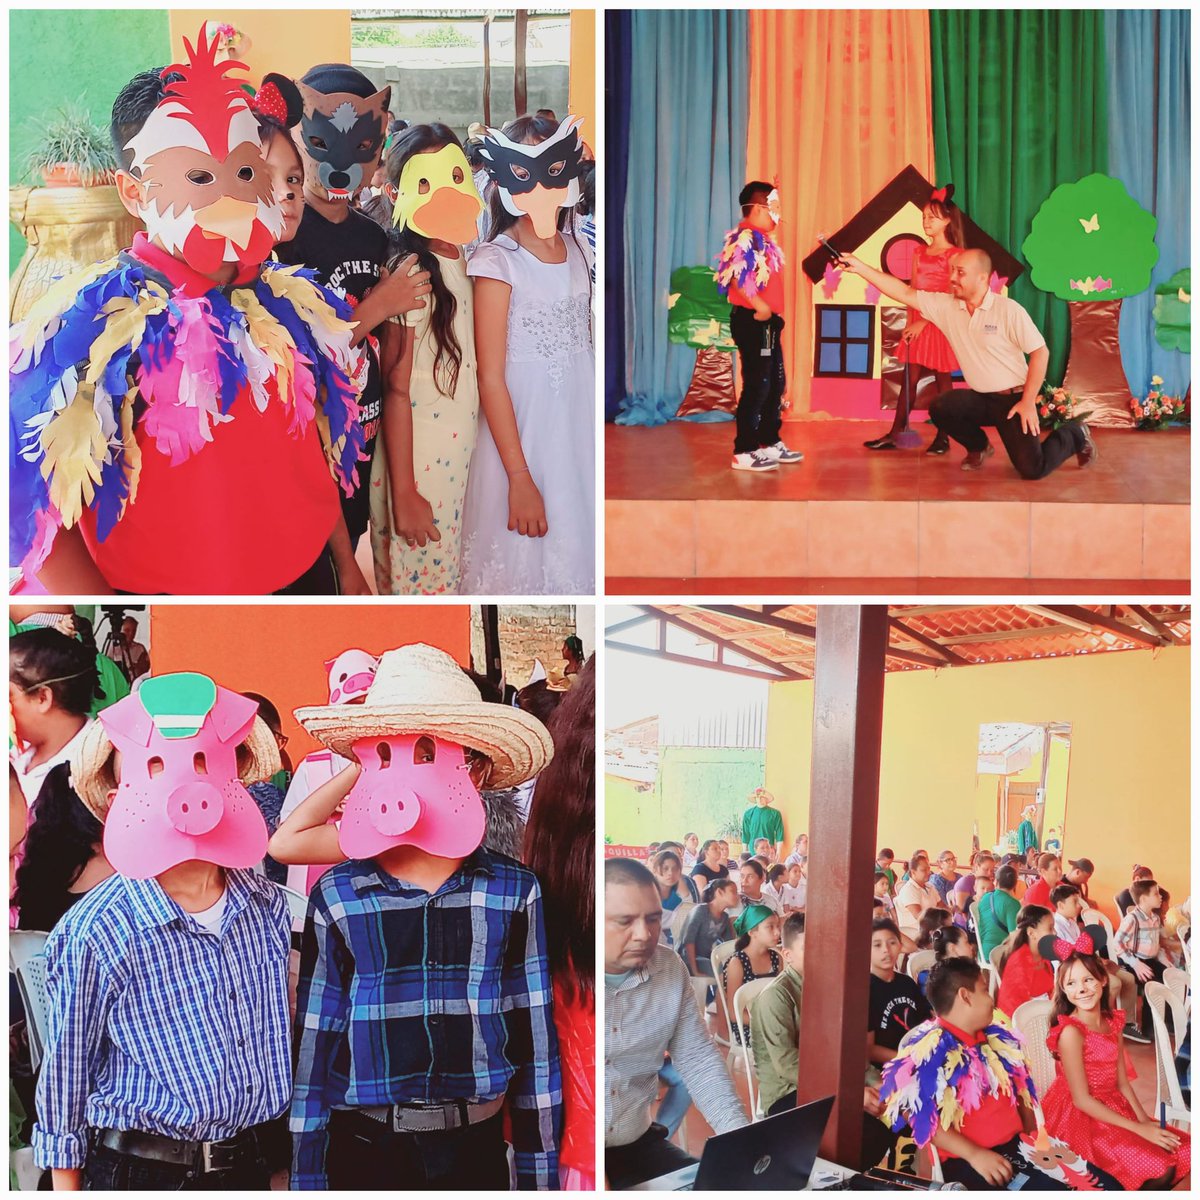 ✅️ Nagarote León

📌Festival de Teatro en Celebración del Día del Libro 

#UnidosEnVictorias Nicaragua

@UVAraceliPerez @aza_01 @perjumador